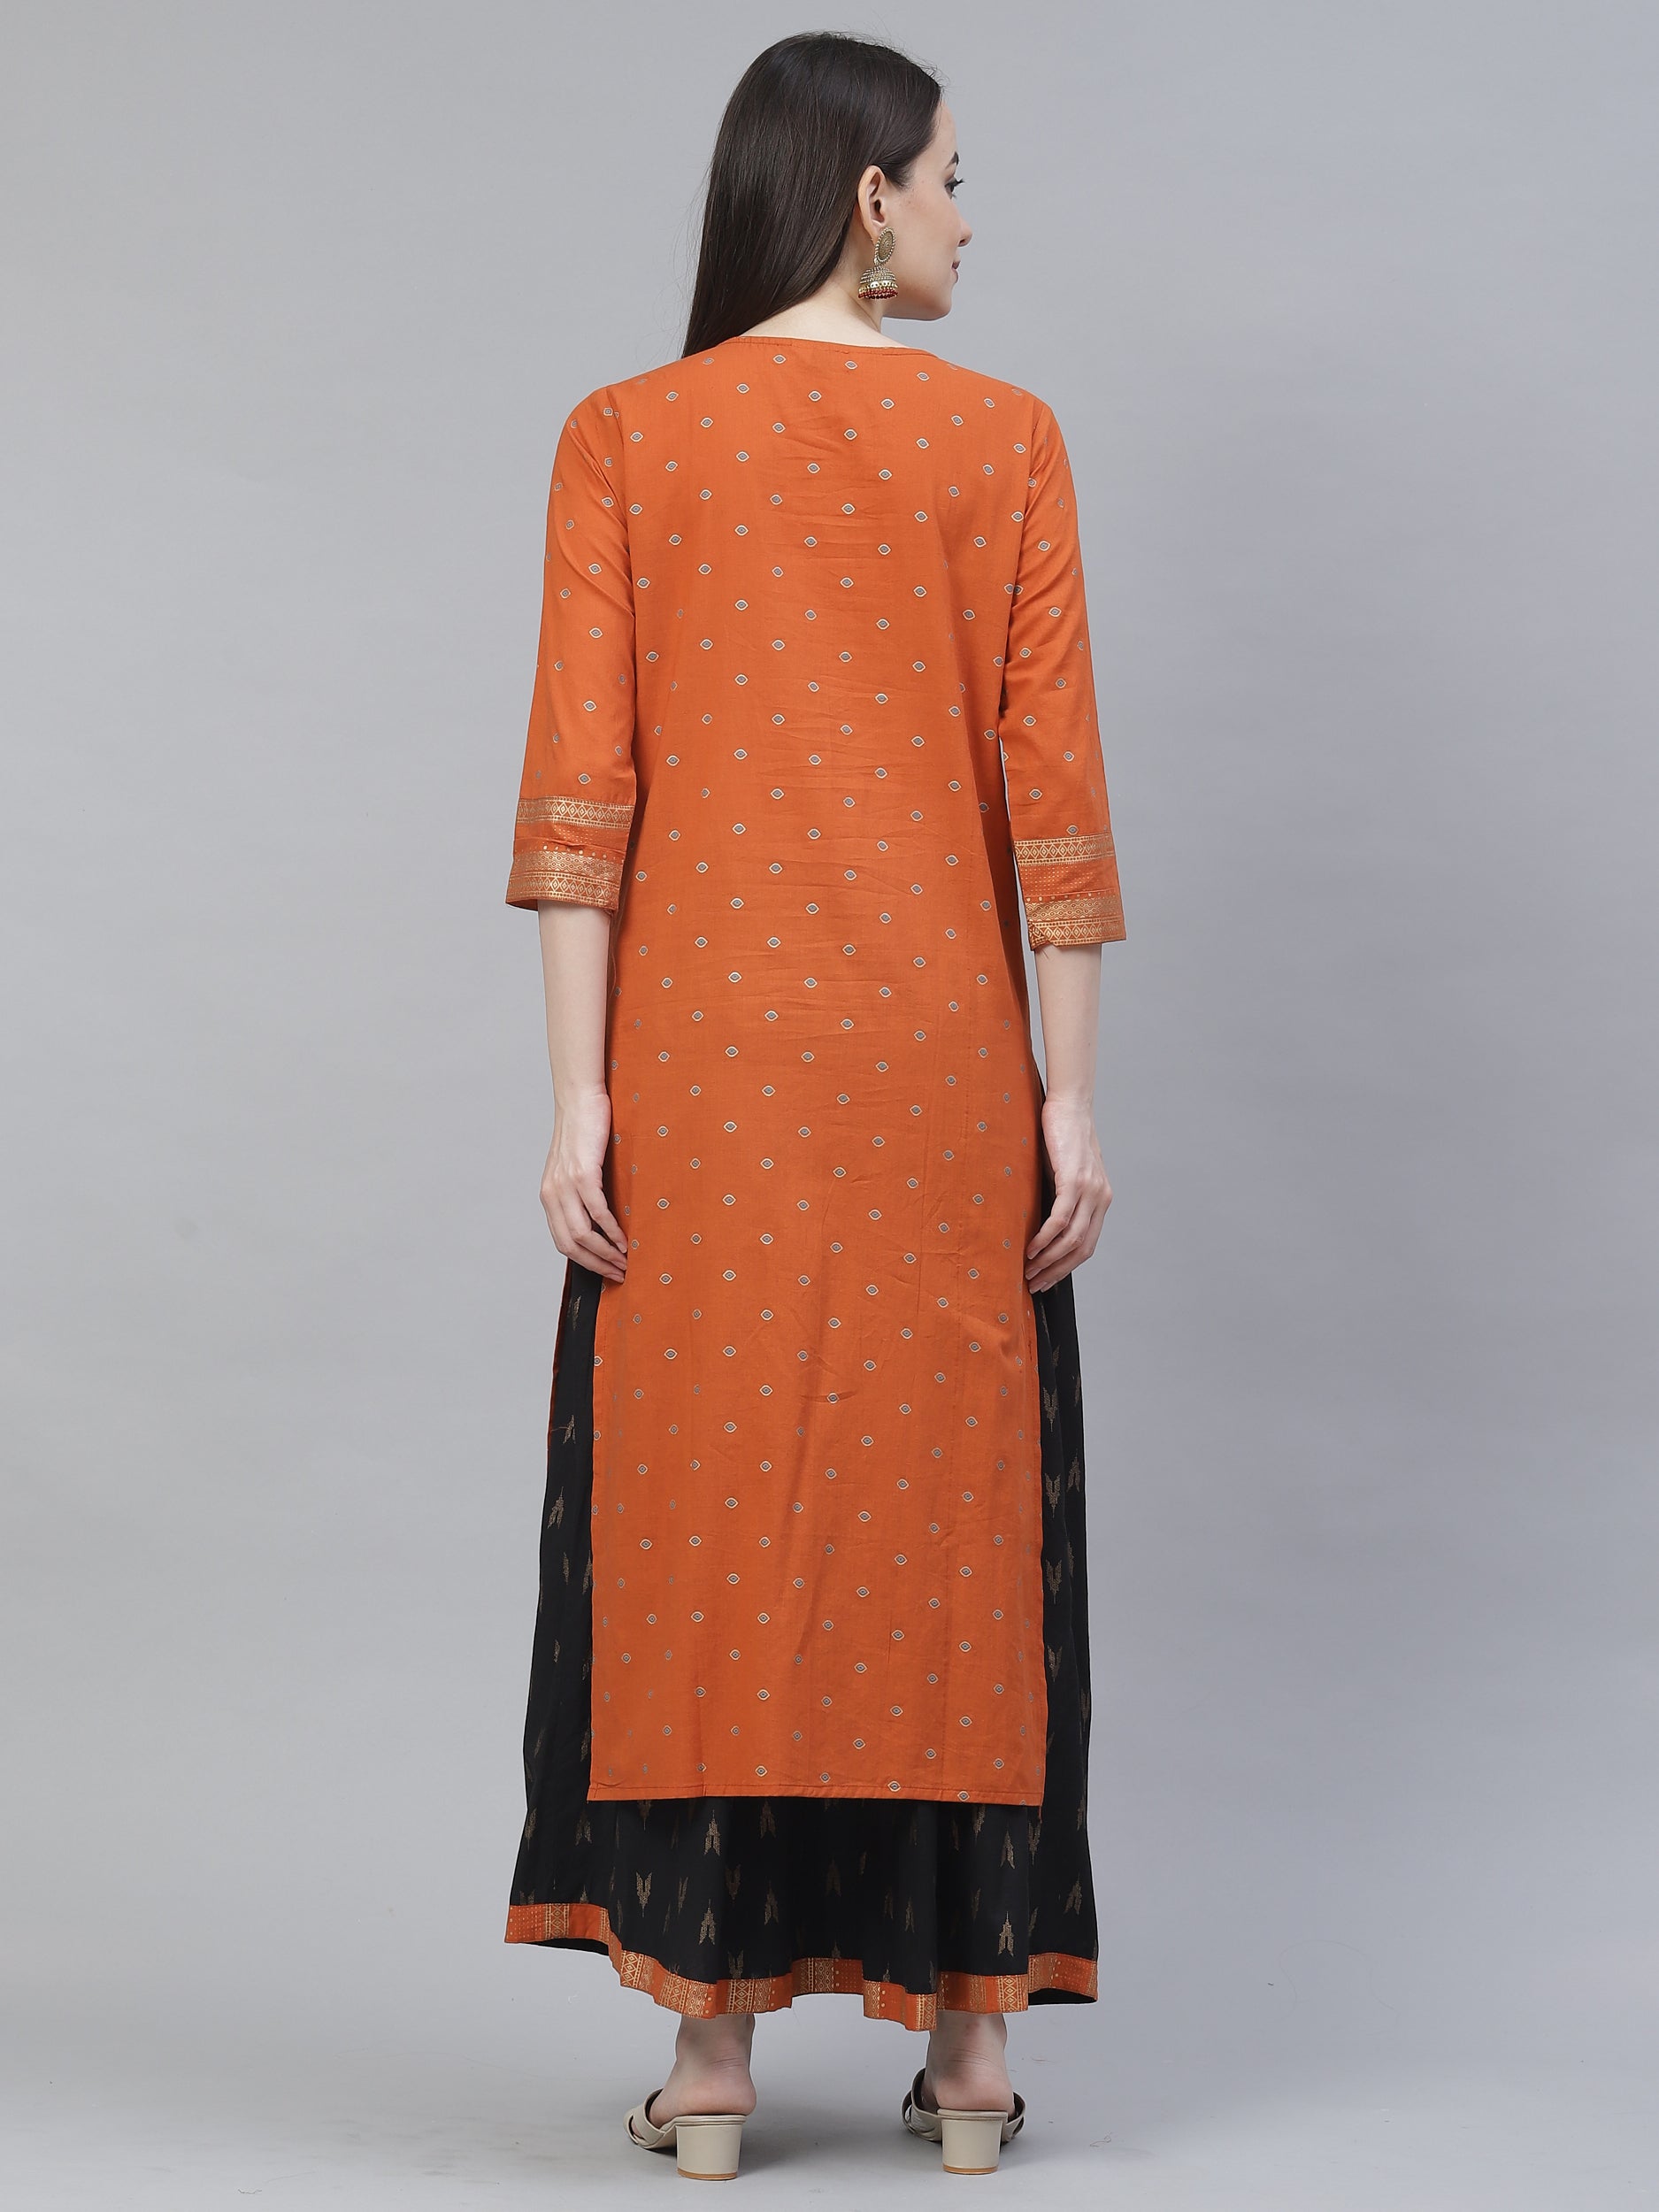 Women's orange & black printed kurta with skirt - Meeranshi